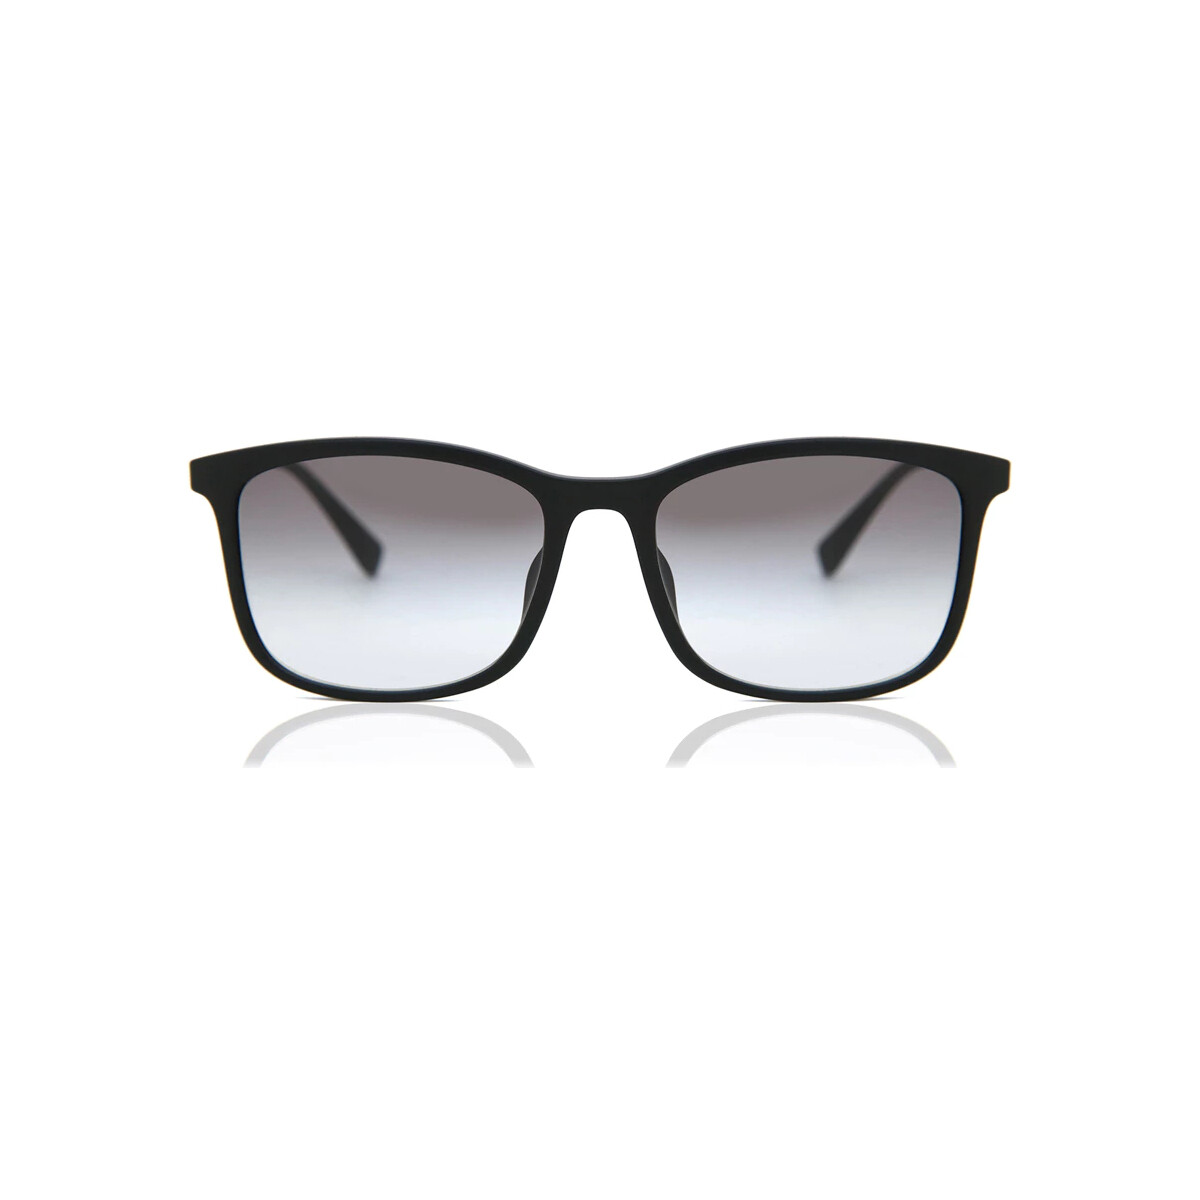 Montres & Bijoux Homme Lunettes de soleil Eyewear Prada PS 01TS Lunettes de soleil, Noir/Gris, 56 Noir